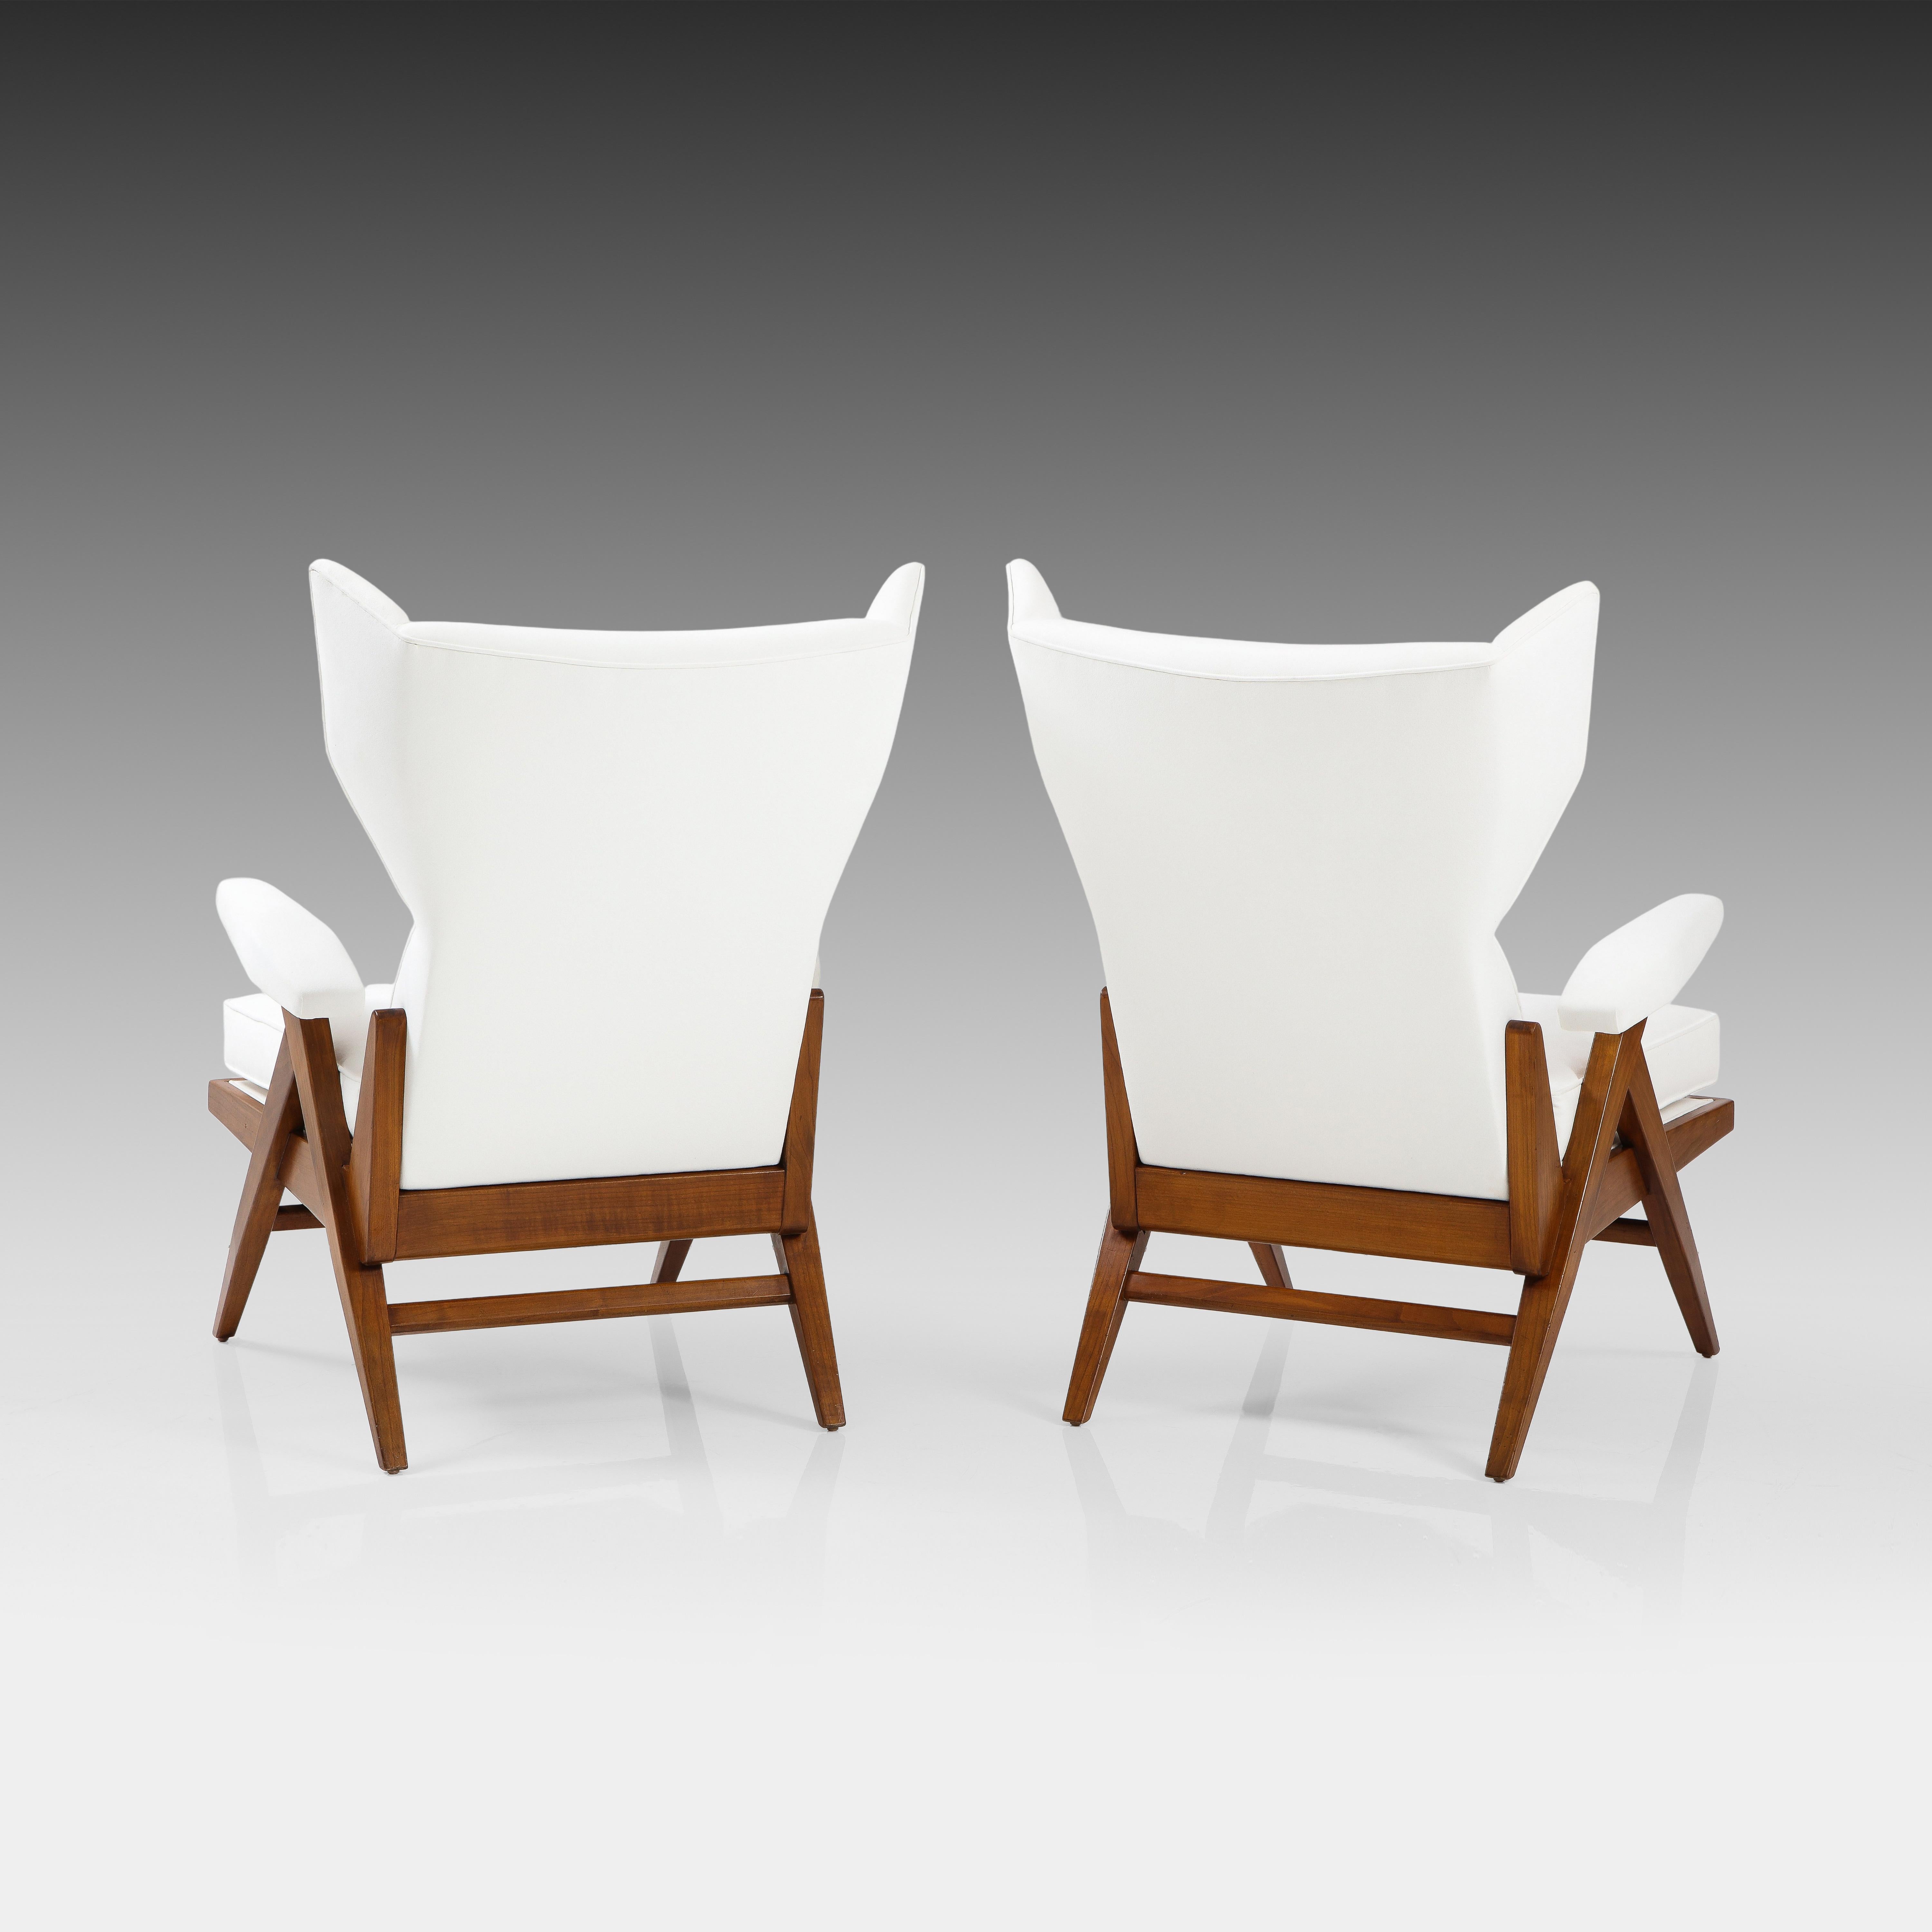 Ultrasuede Renzo Franchi pour Camerani Rare paire de chaises longues blanches 